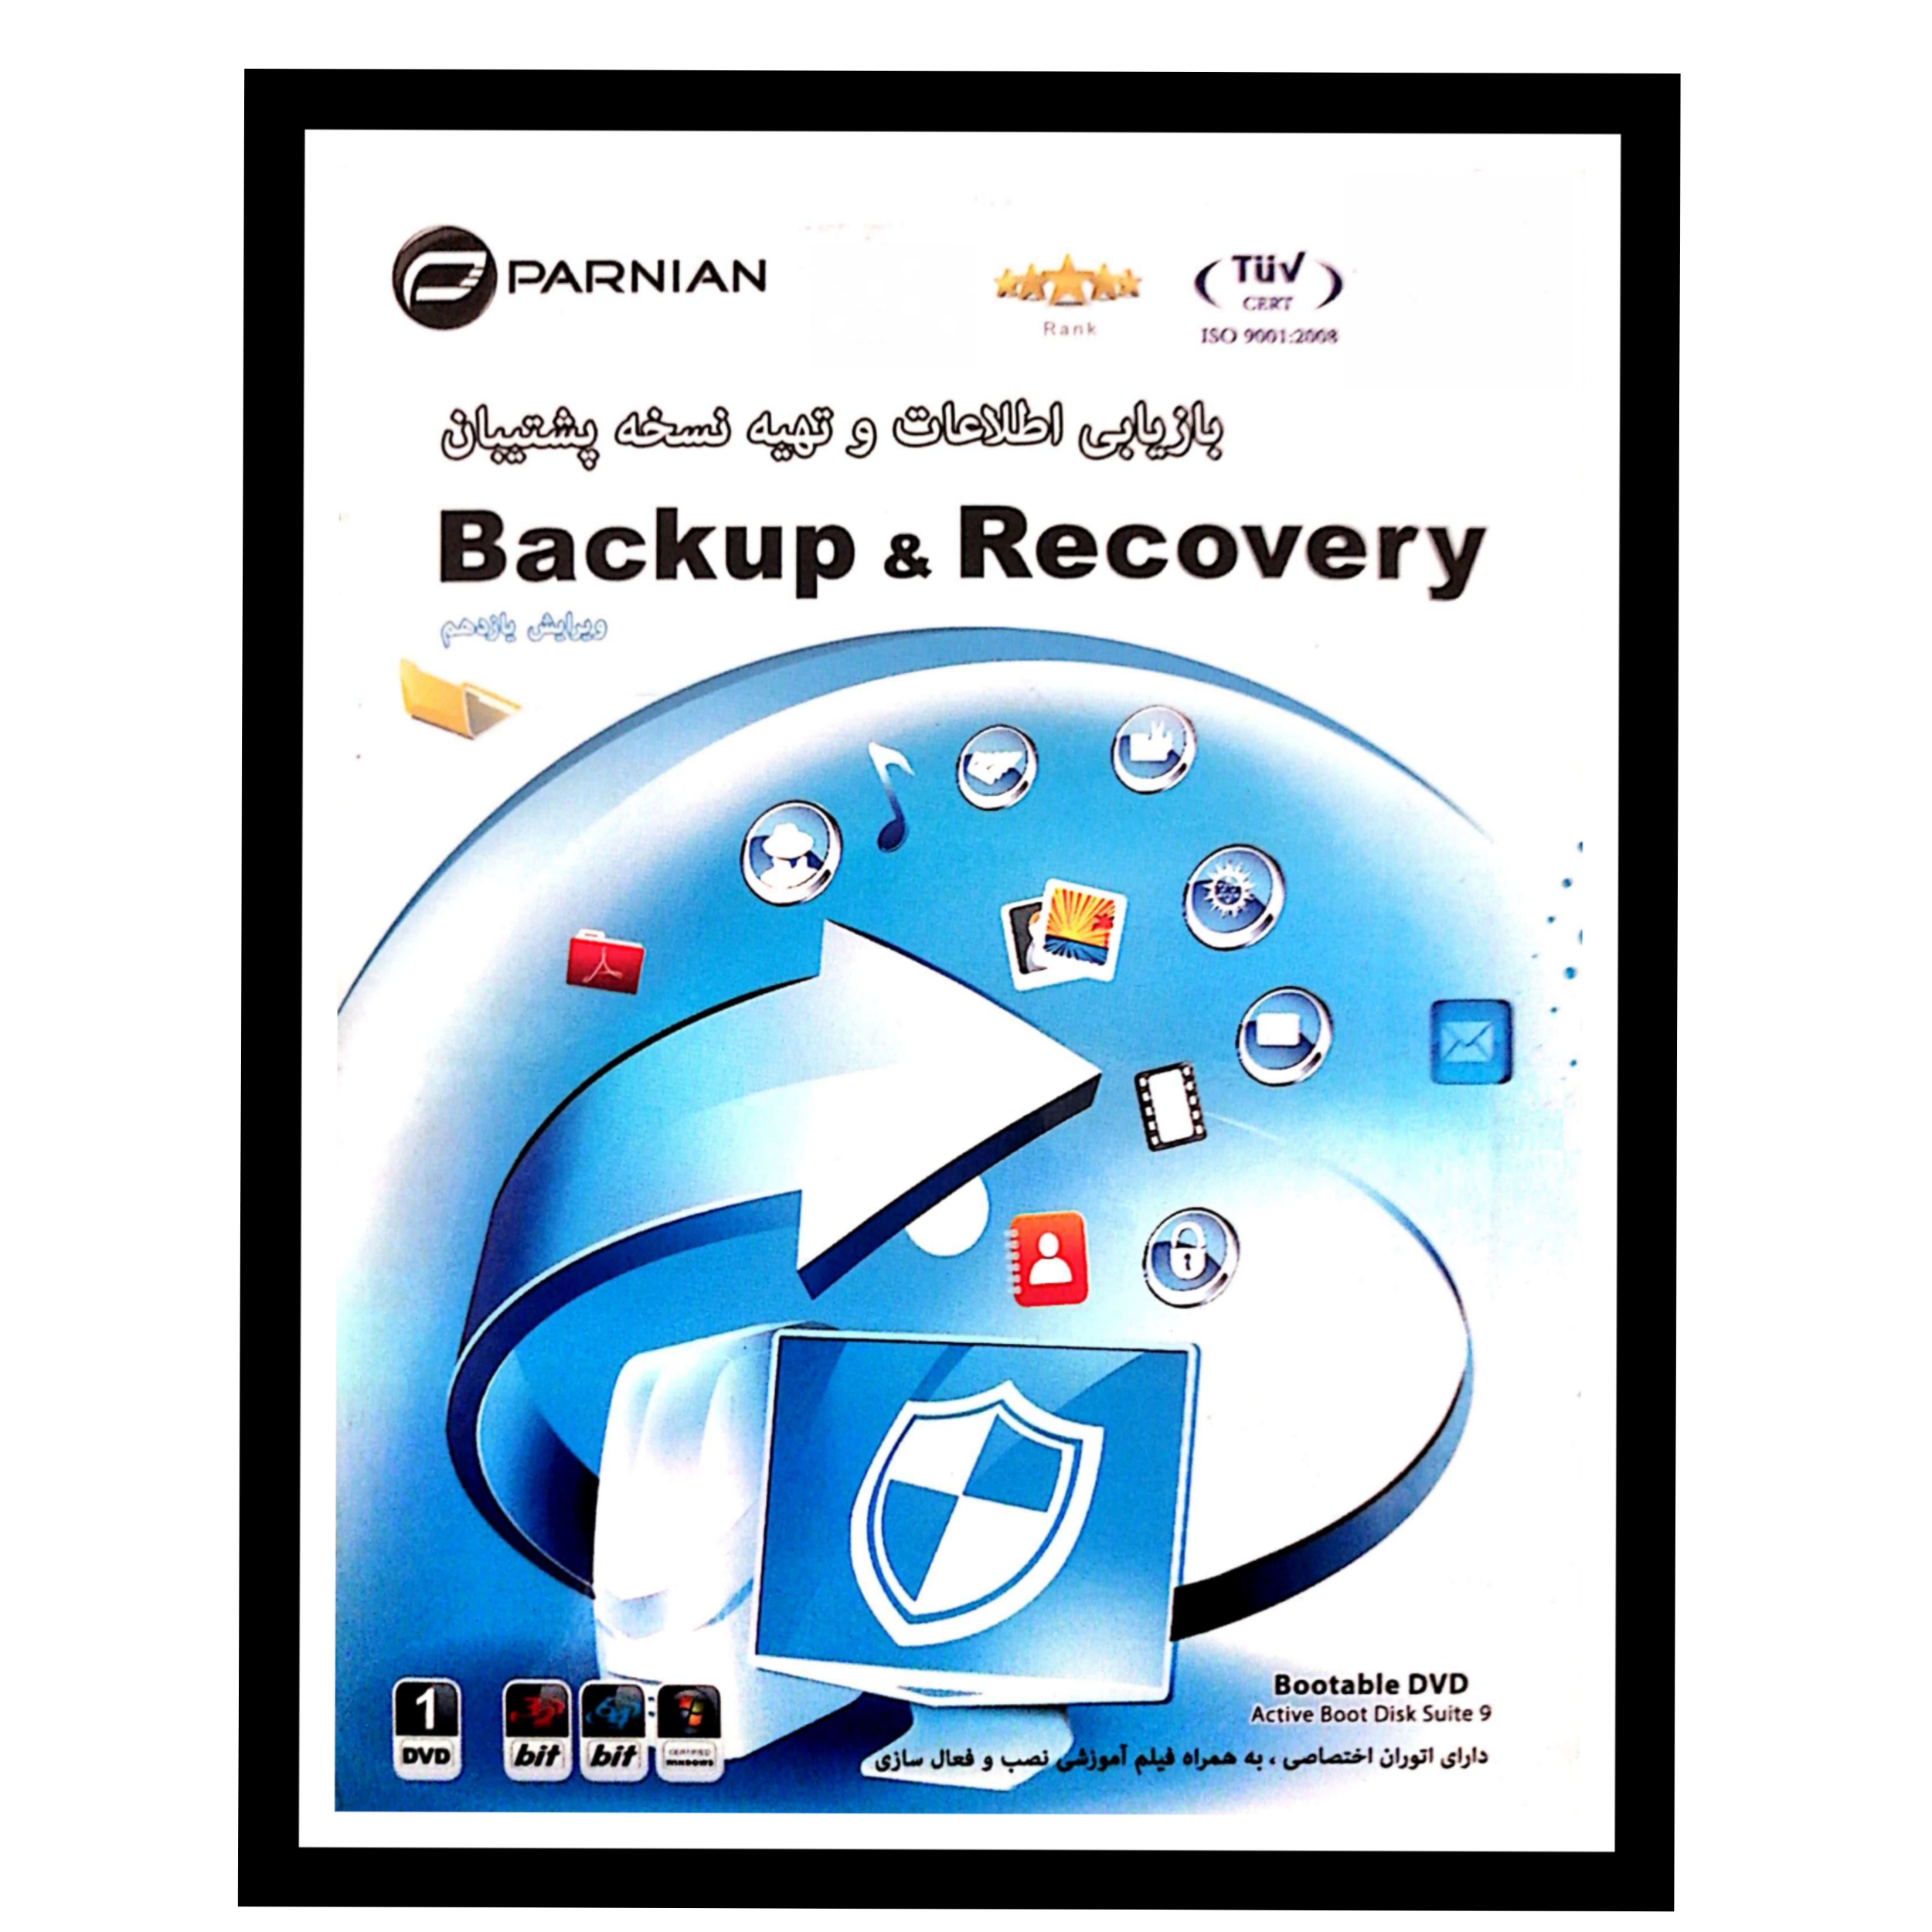 نرم افزار backup and recovery نشر پرنیان